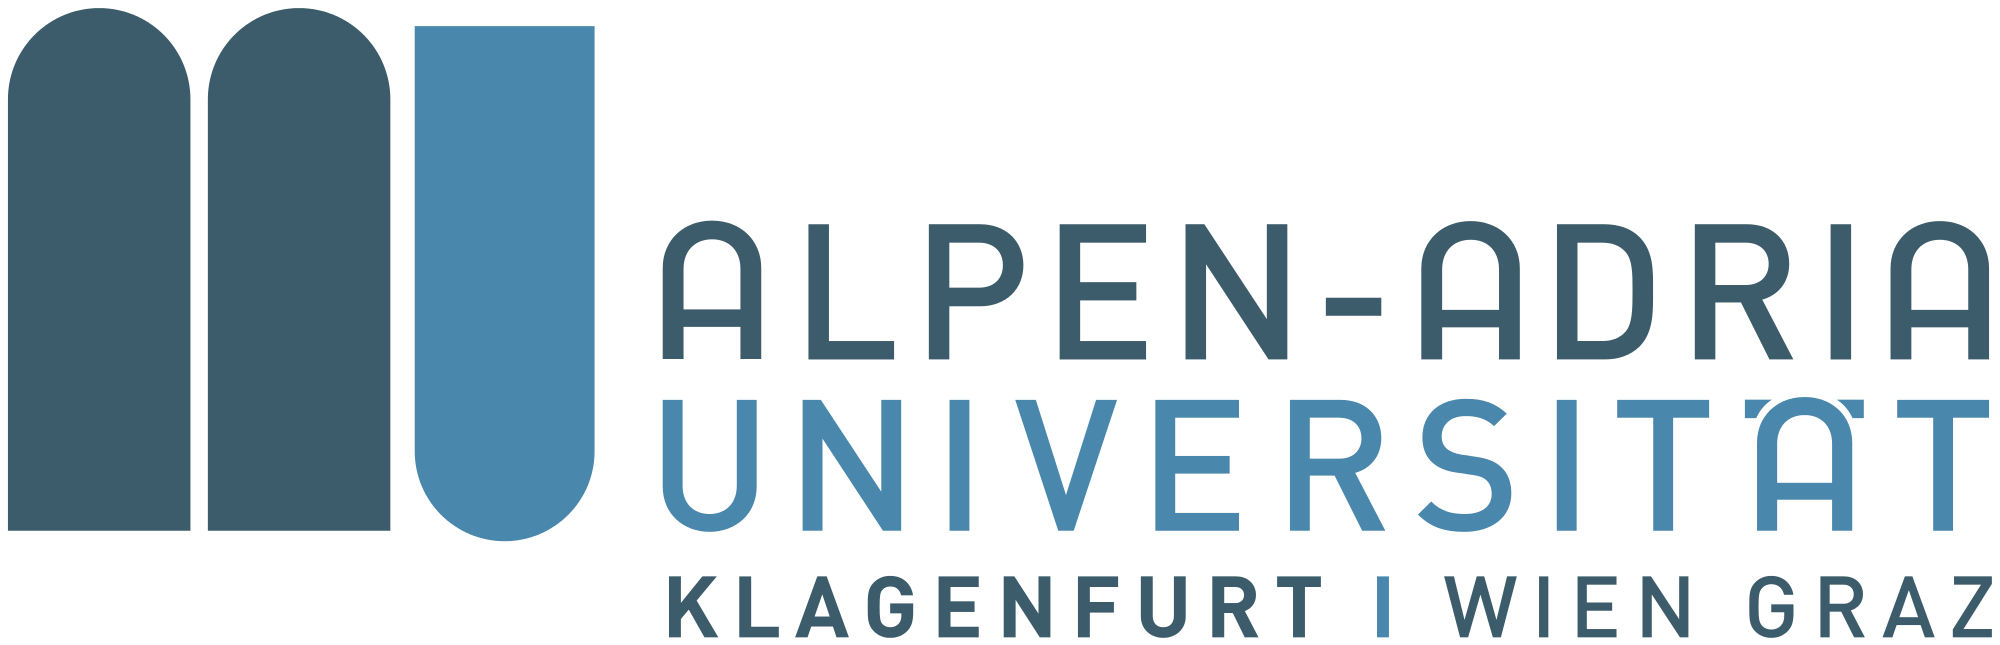  Universität der Alpen-Adria-Universität Klagenfurt 